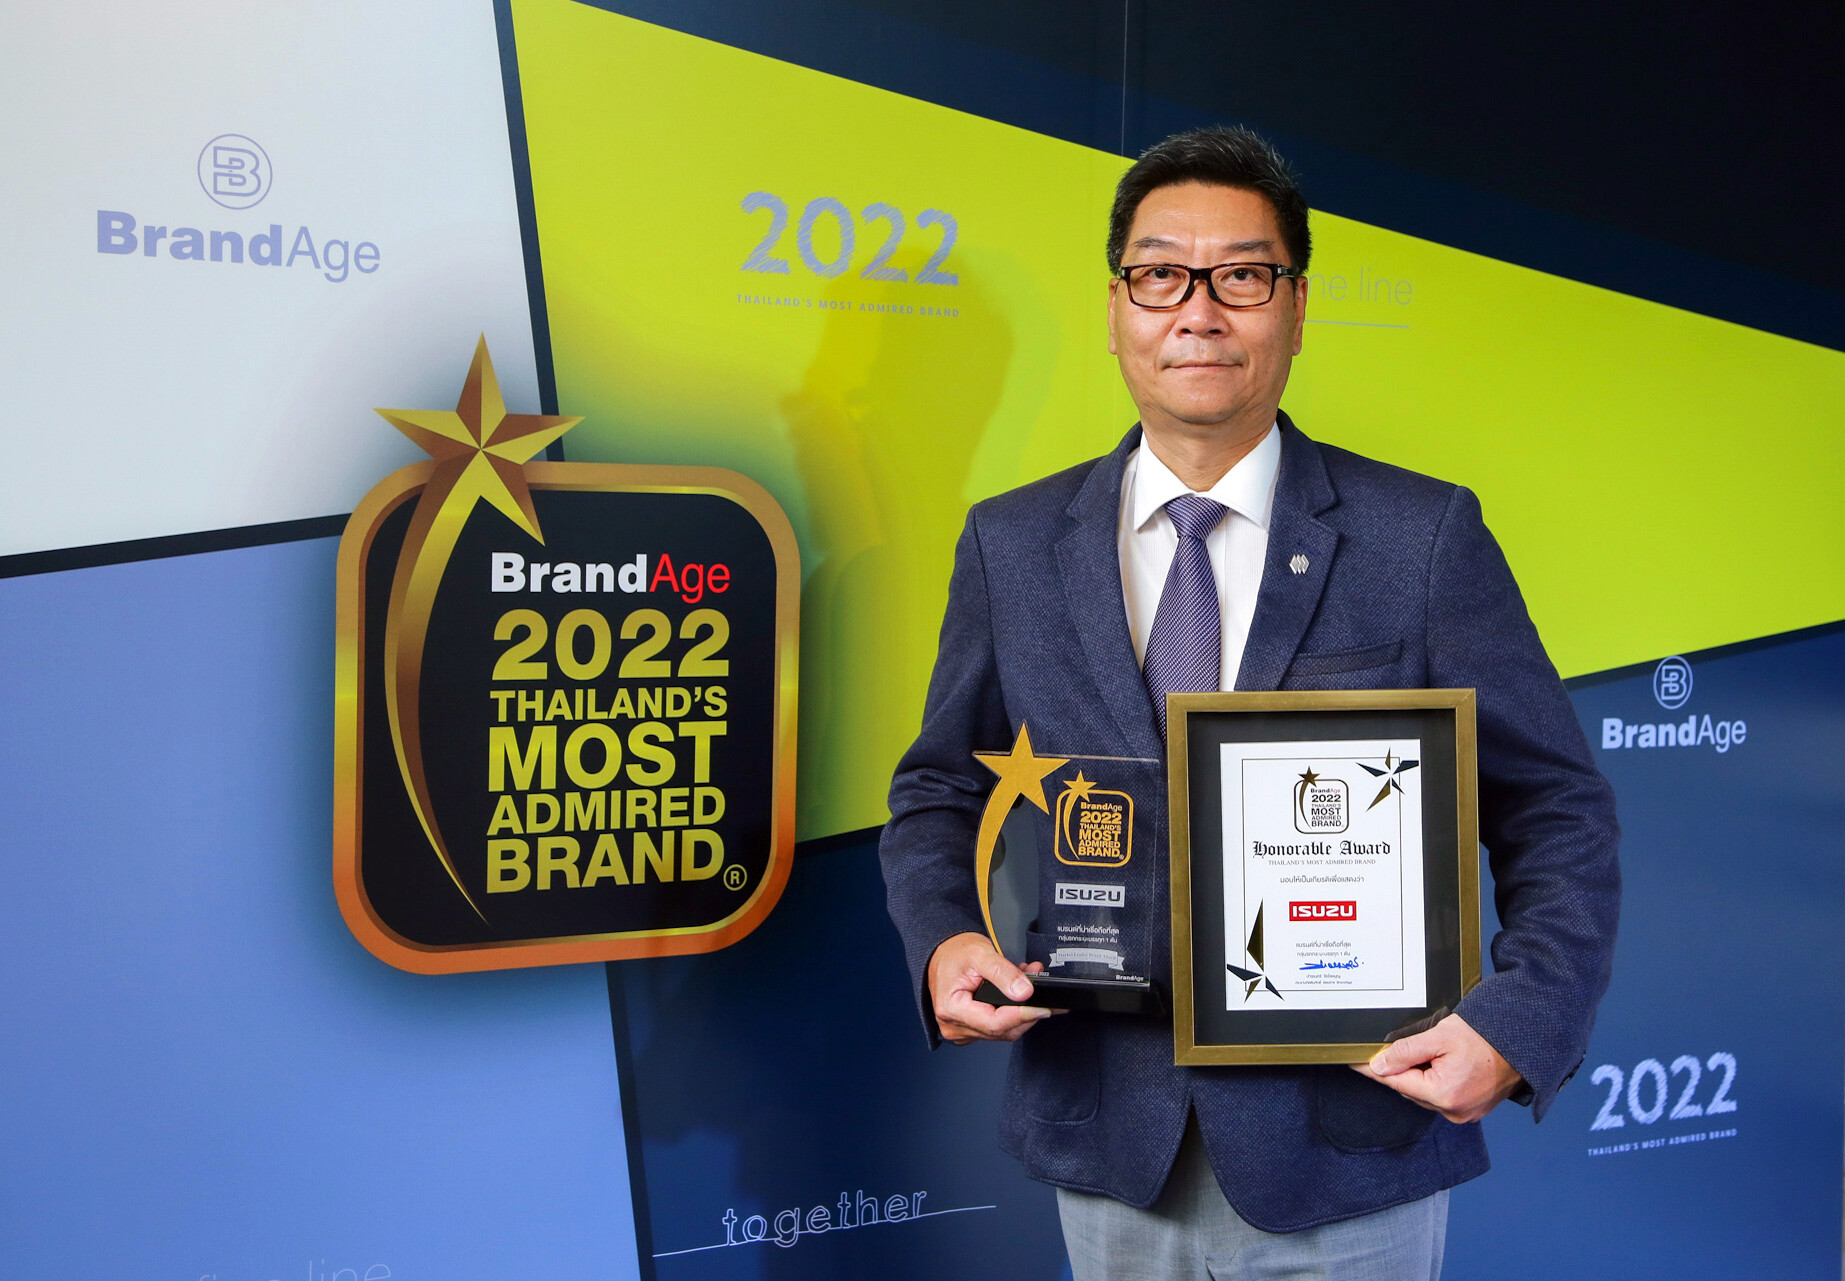 อีซูซุรับรางวัลเกียรติยศ "แบรนด์น่าเชื่อถือสูงสุดแห่งปี" (Thailand's Most Admired Brand) และรางวัลพิเศษ "Market Leader Brand Award"